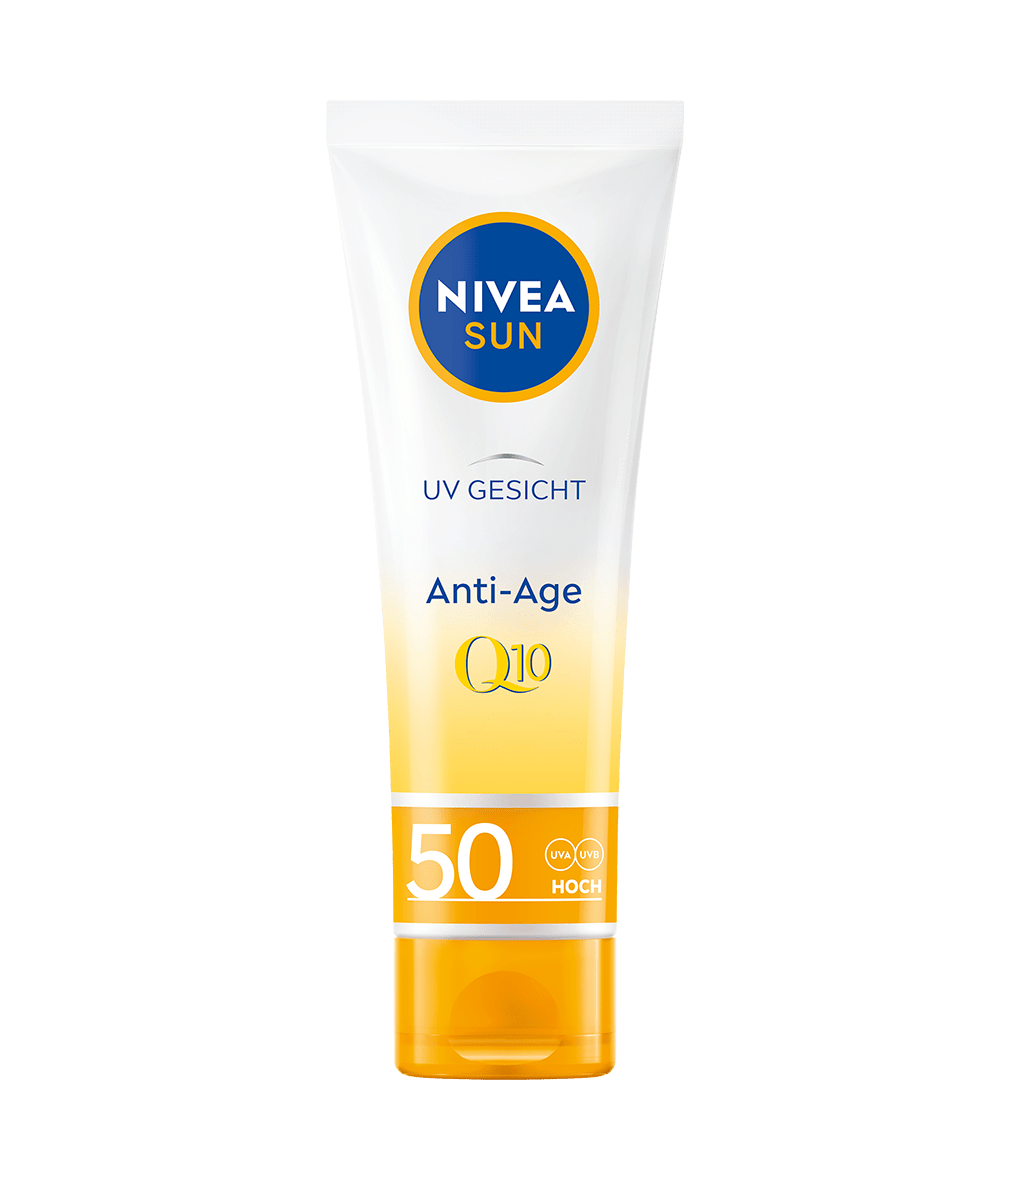 NIVEA SUN UV Gesicht Q10 Anti Age Sonnenschutz LSF 50 50 ml